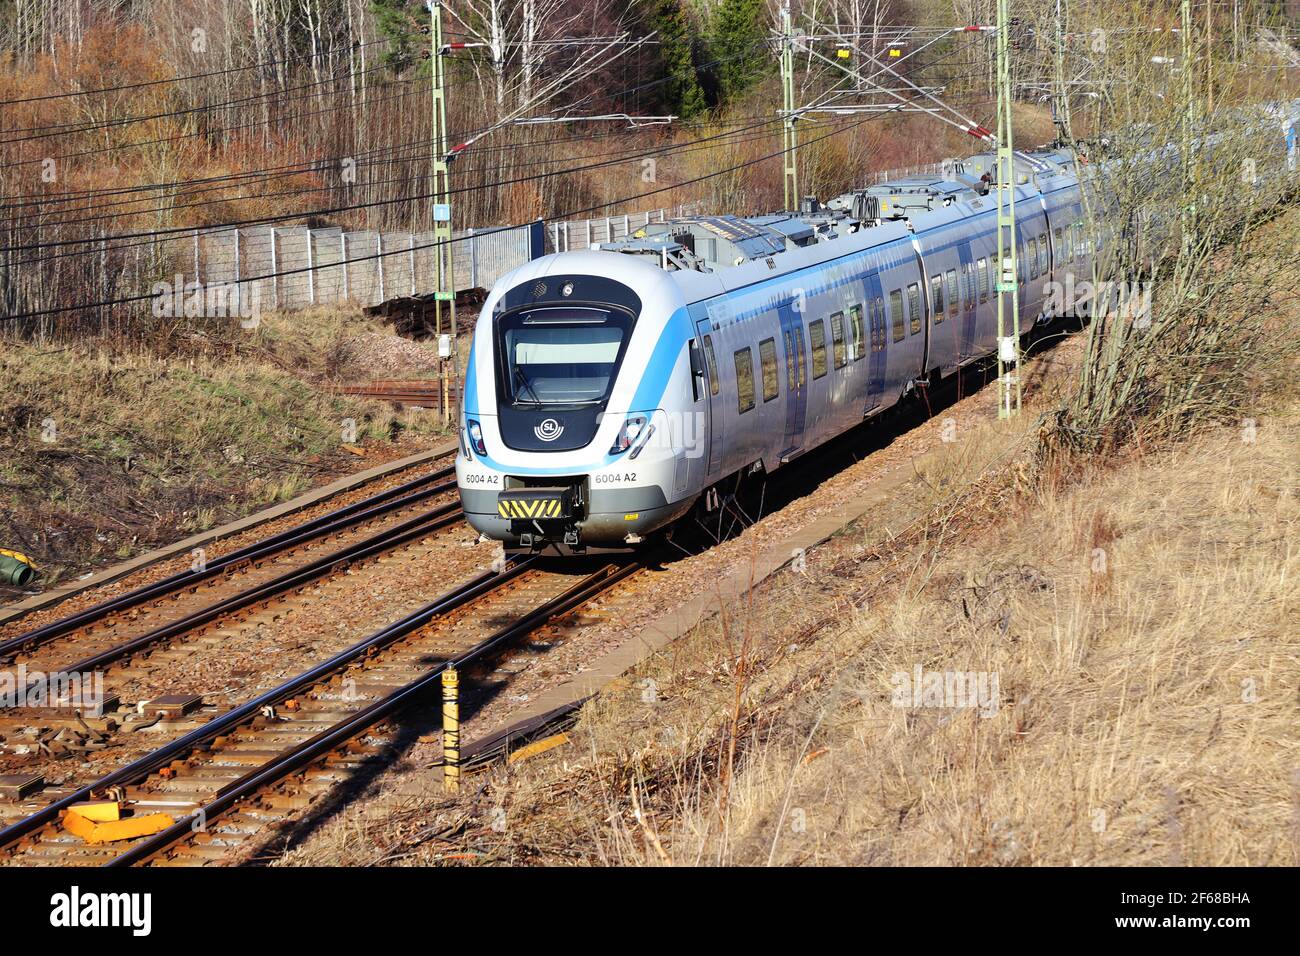 Sodertalje, Schweden - 30. März 2021: Blick auf einen Stockholmer Nahverkehrszug der Baureihe X60, der zum Bahnhof Ostertalje einfährt. Stockfoto